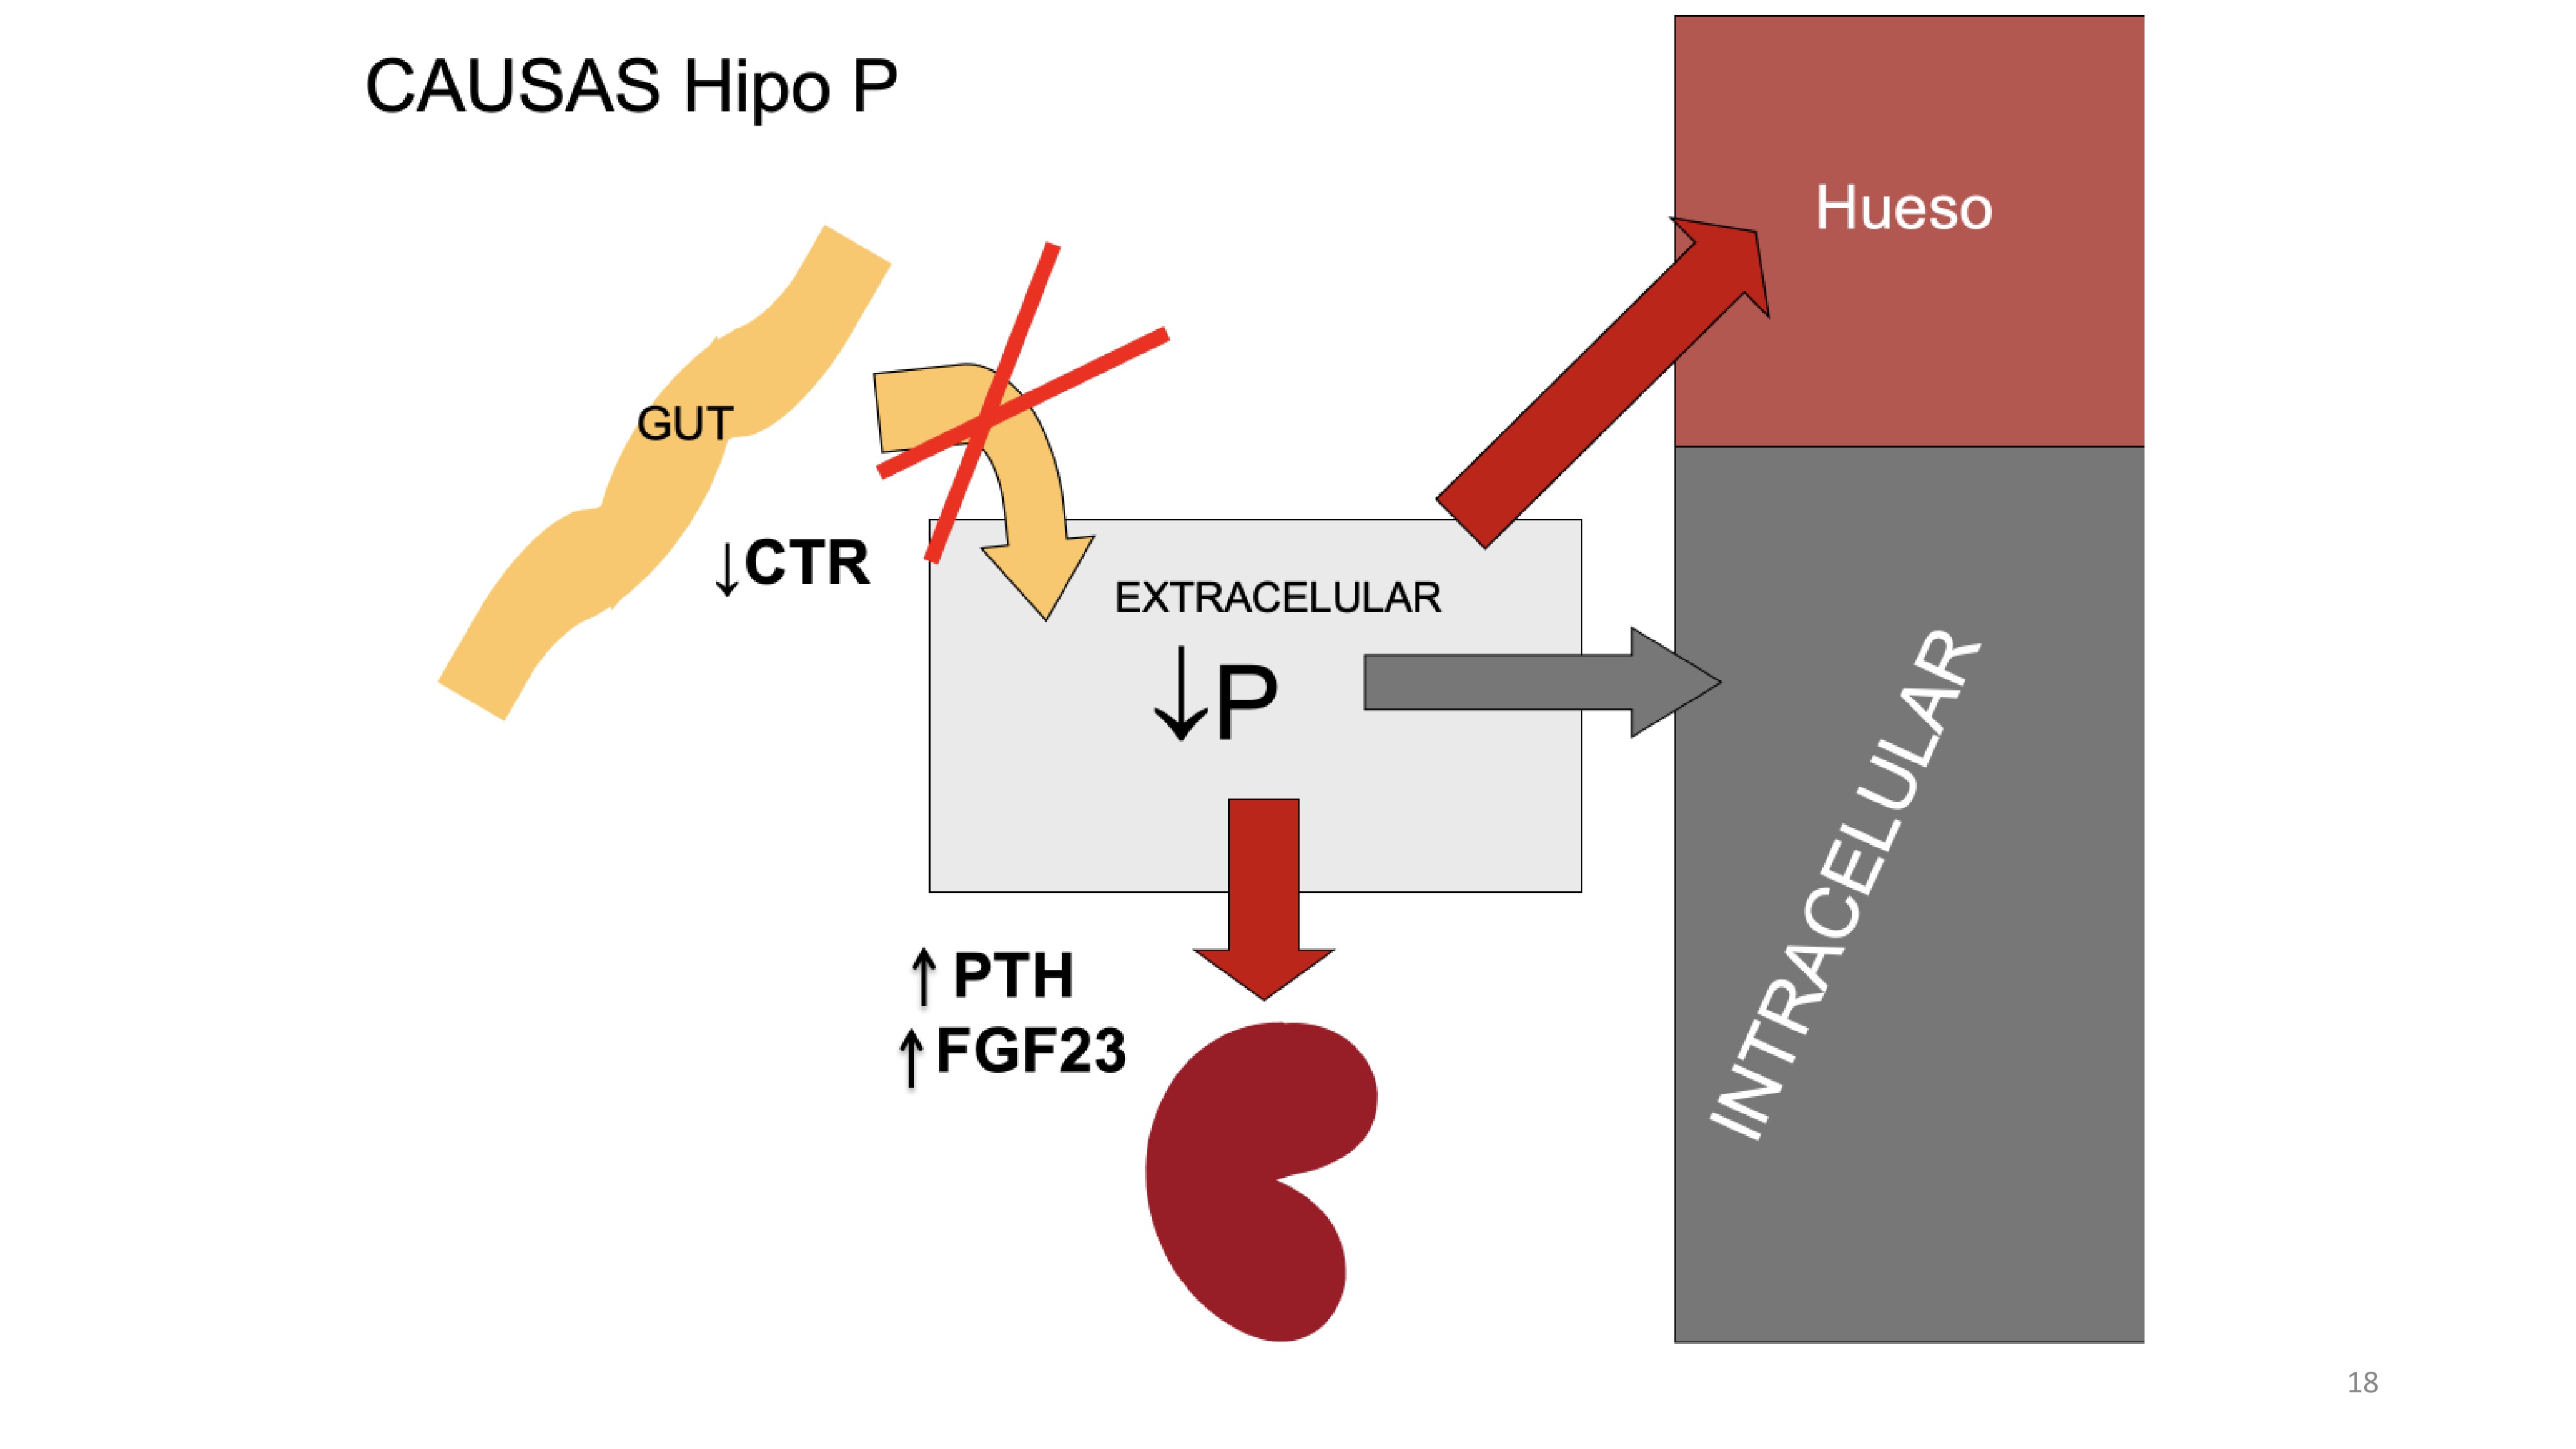 La concentración de P sérico ( valores normales fosfato sérico (P) son de 3 a 4,5 mg/dl (0,75-1,45 mmol/l) en niños los valores normales legan hasta 5-6 mg/dl depende de la edad . La concentración de P en el suero refleja el contenido de P extracelular que es el resultado del balance de absorción intestinal de P , intercambio cpn hueso y células y excreción renal de PLas causas de hipofosfatemia se pueden esencialmente: -disminución de absorción intestinal de P (falta de vitamina D)-desplazamiento de P al hueso o espacio intracelular (aumento del pH)-excesiva excreción renal de P (que es estimulada oor FGF23 y por PTH)